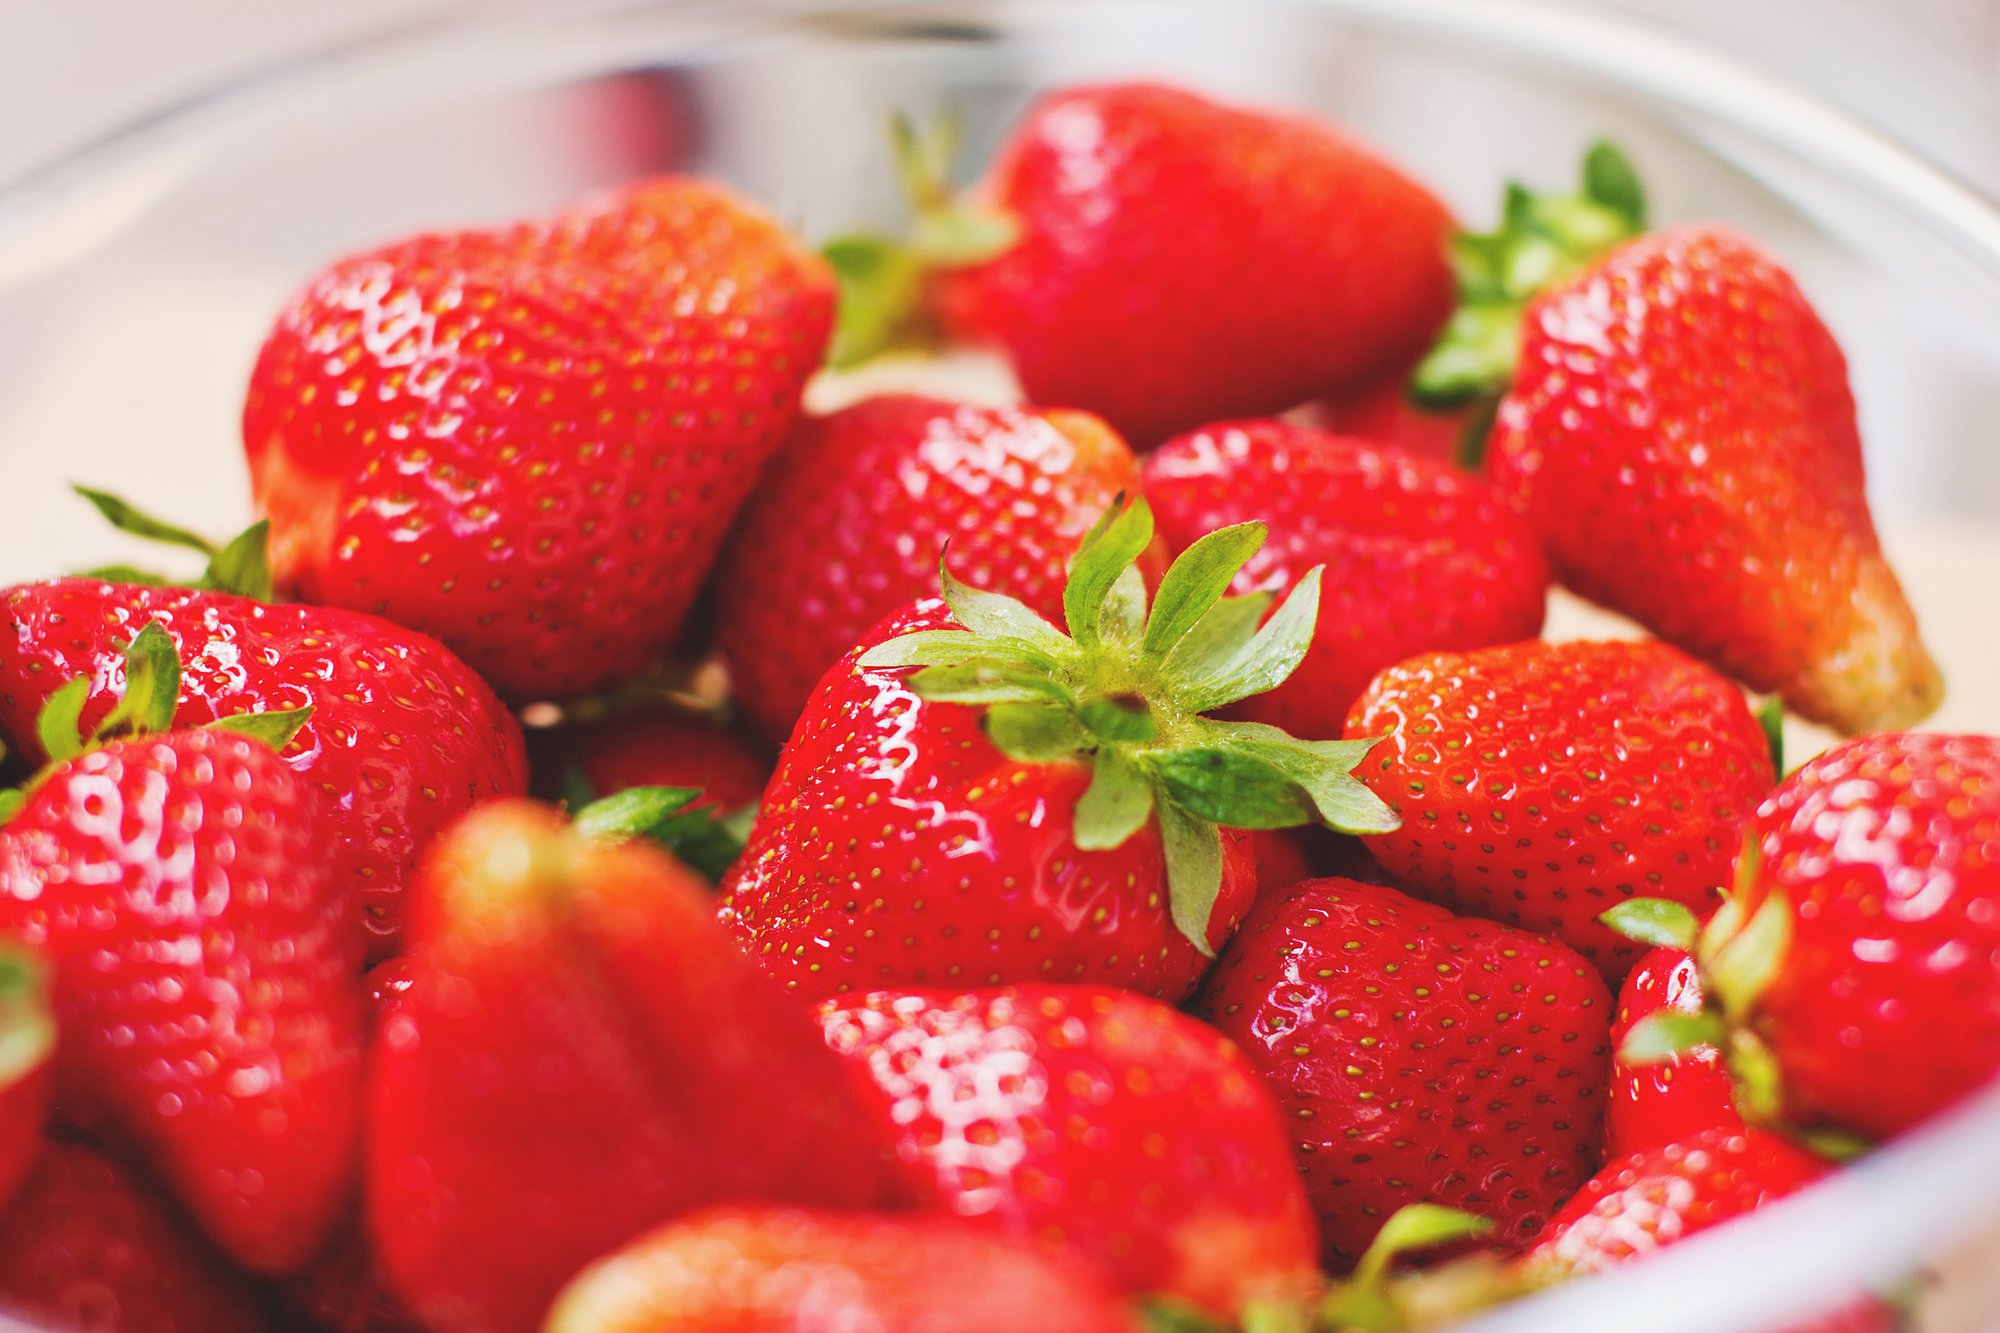 Bowlful of fresh, red strawberries